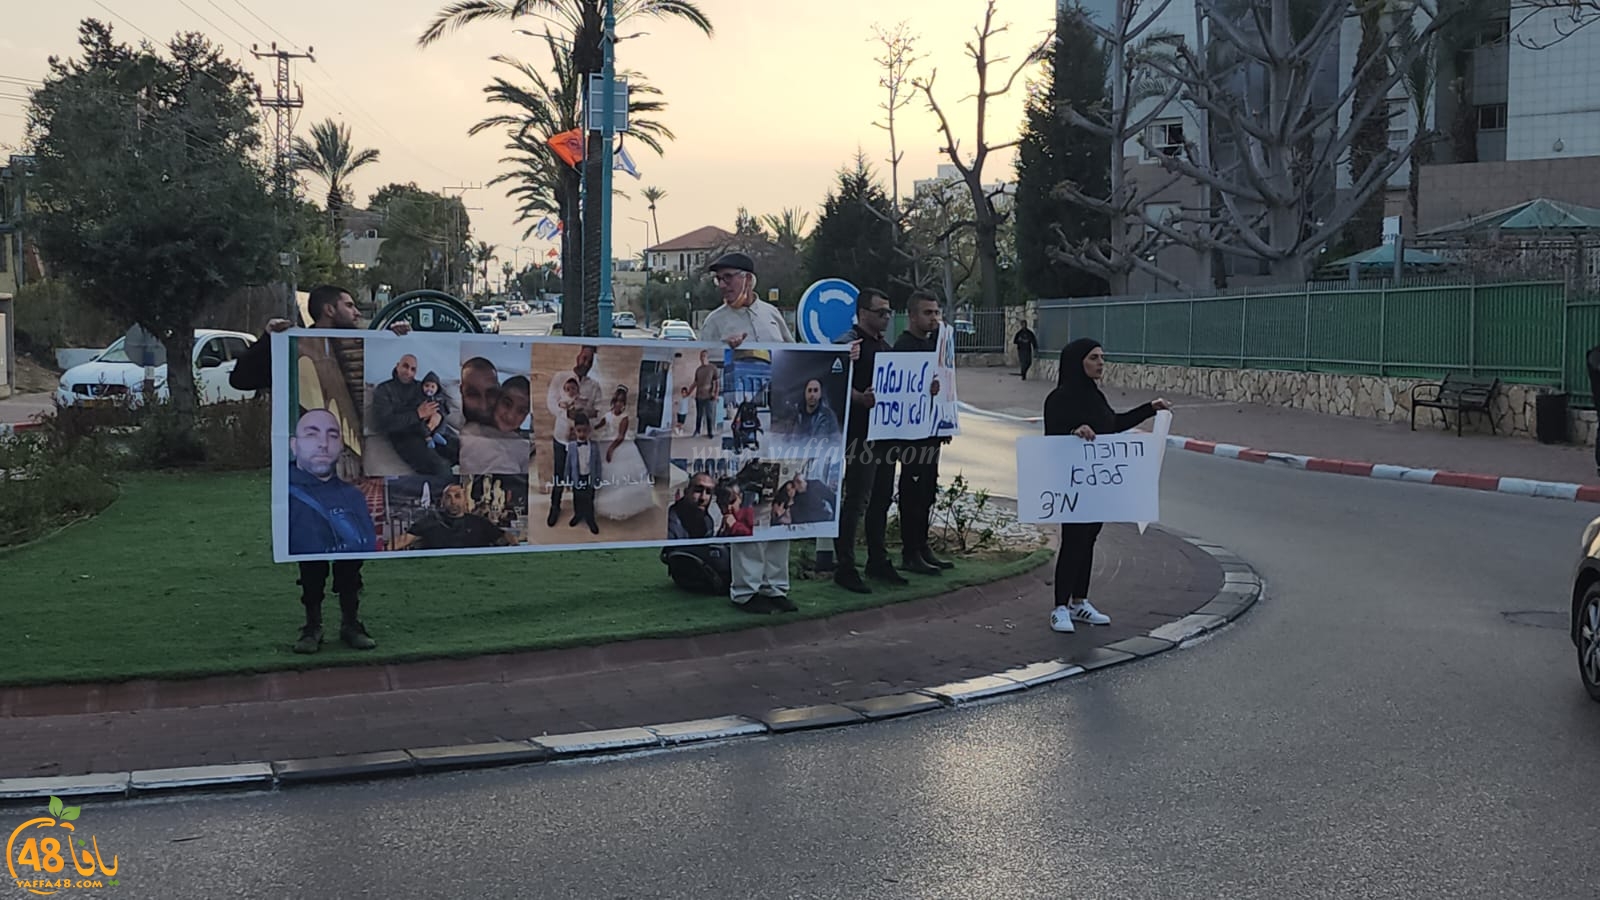  اللد: وقفة احتجاجية للمطالبة بمعاقبة قتلة الشهيد موسى حسونة 